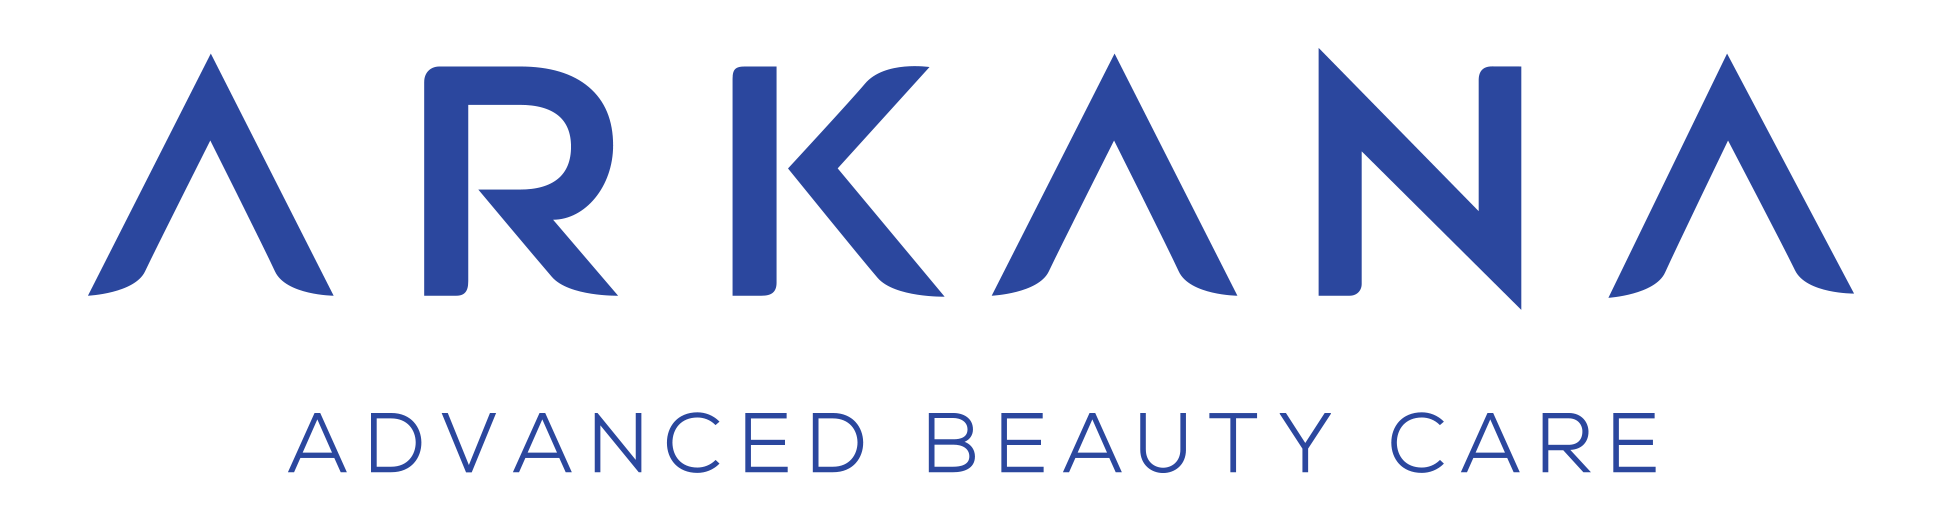 Arkana Cosmetics Eesti